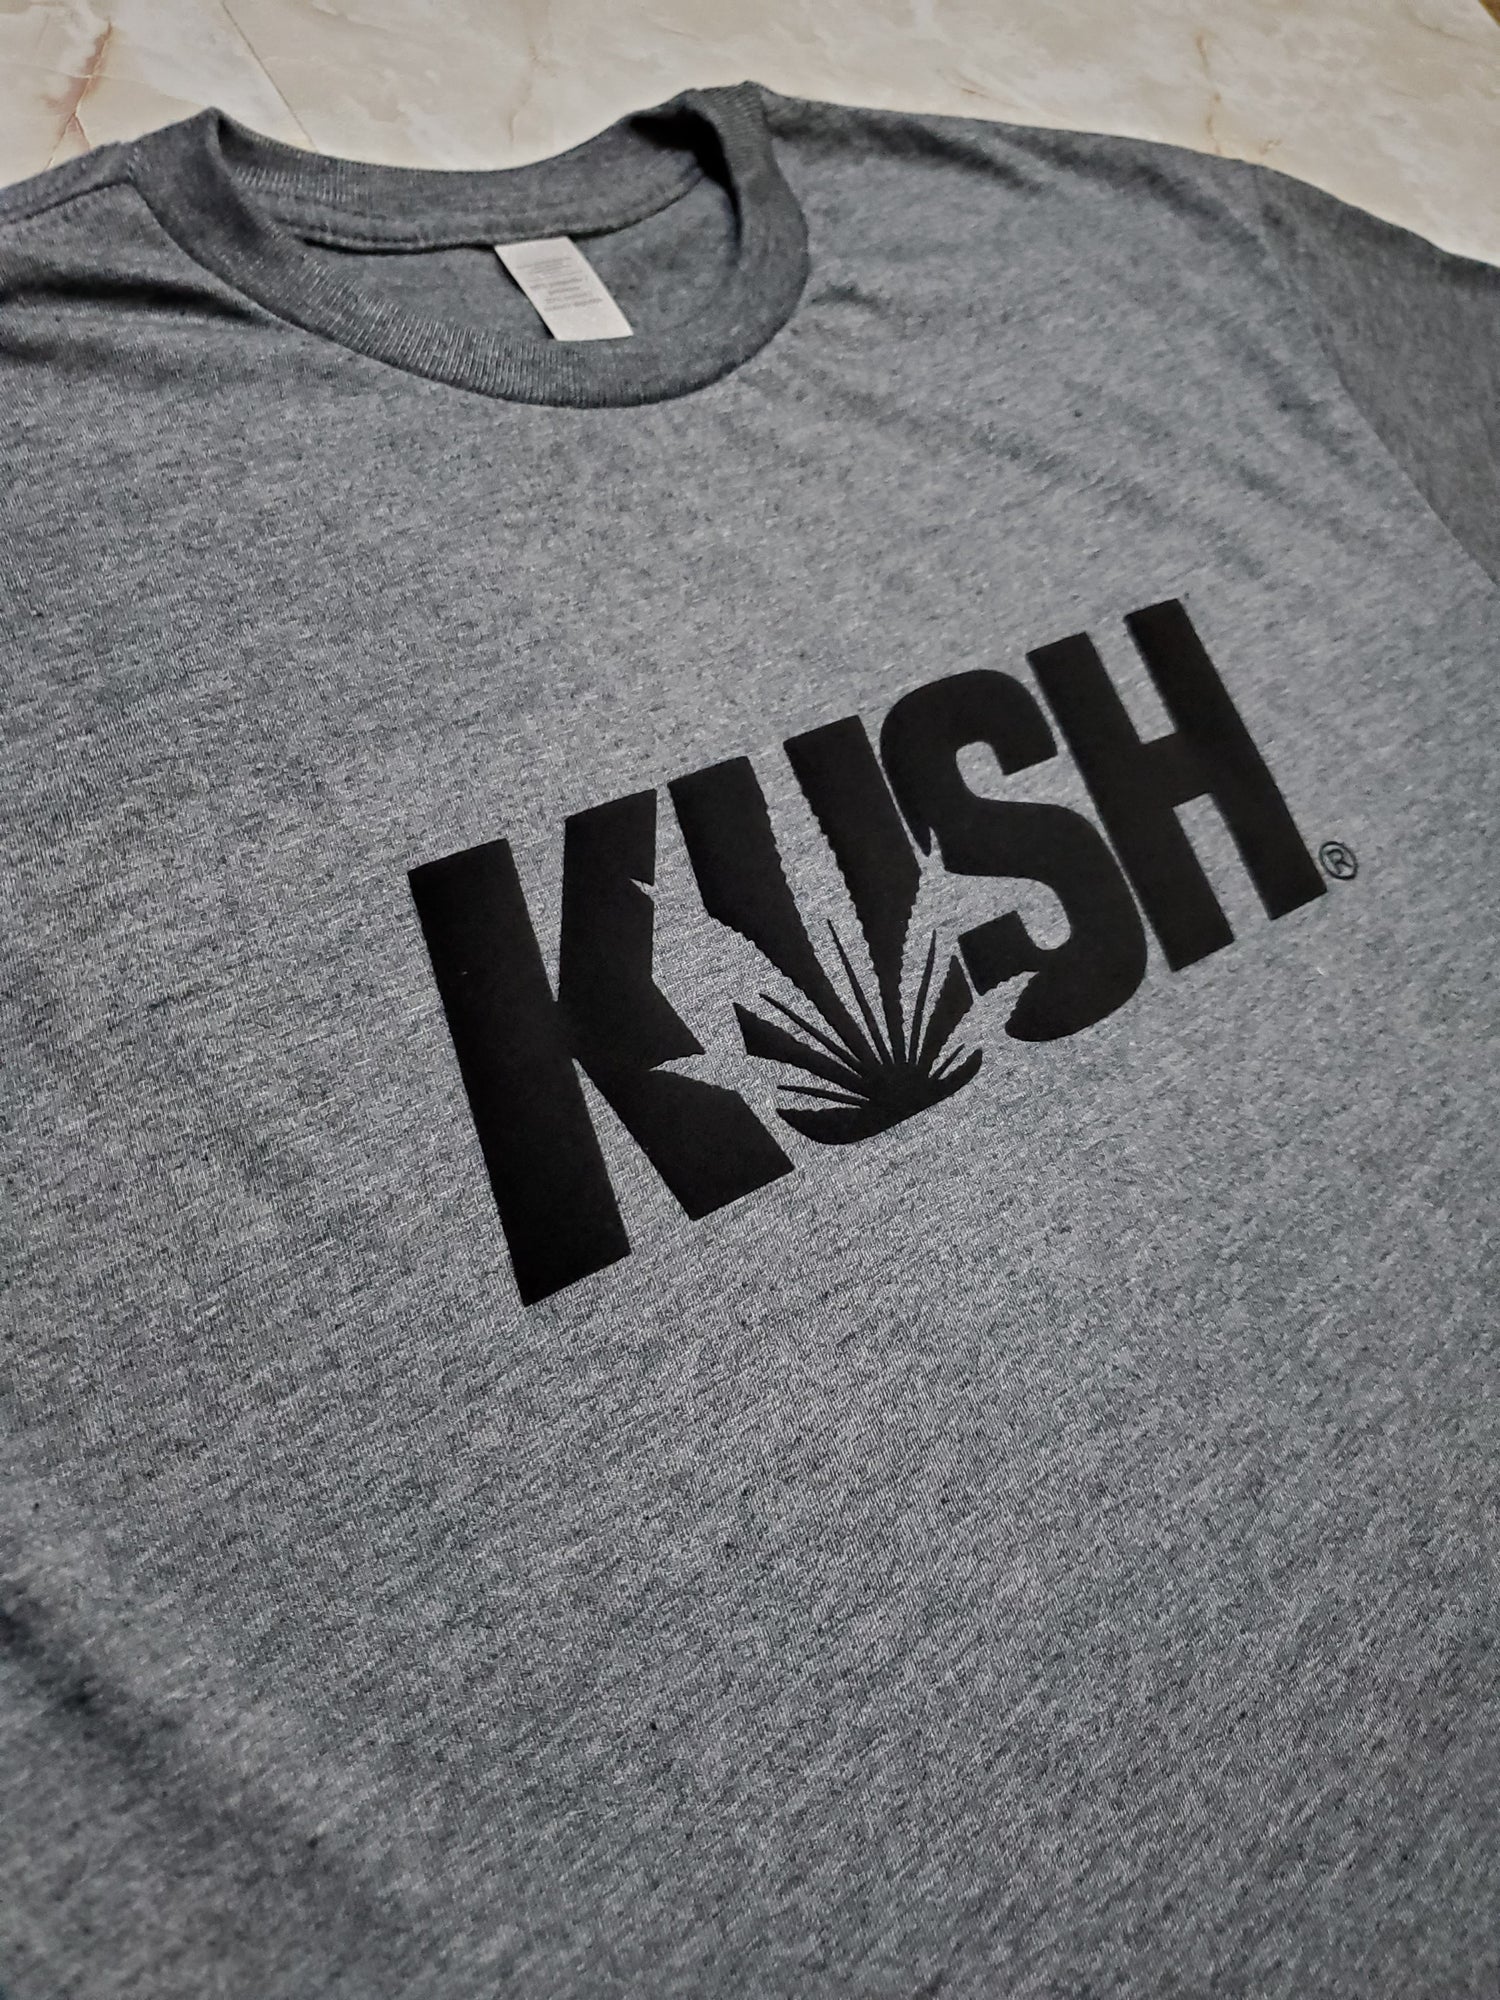 KUSH T-Shirt (Stoned) - Centre Ave Clothing Co.